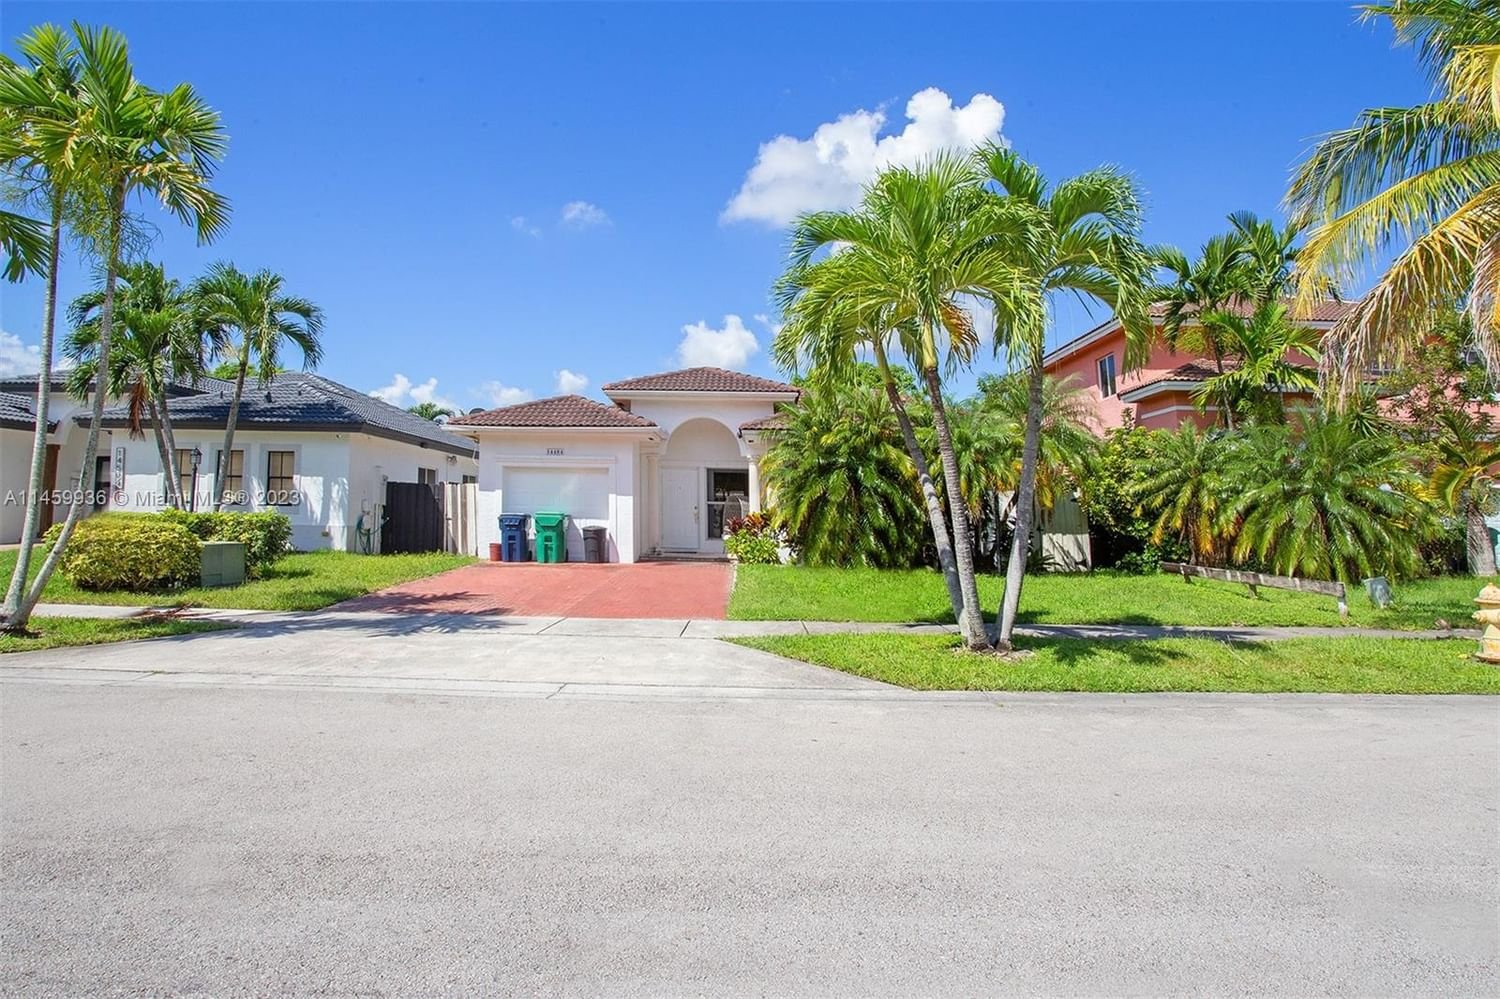 Real estate property located at 14484 158th Ct, Miami-Dade County, MILON VENTURE, Miami, FL